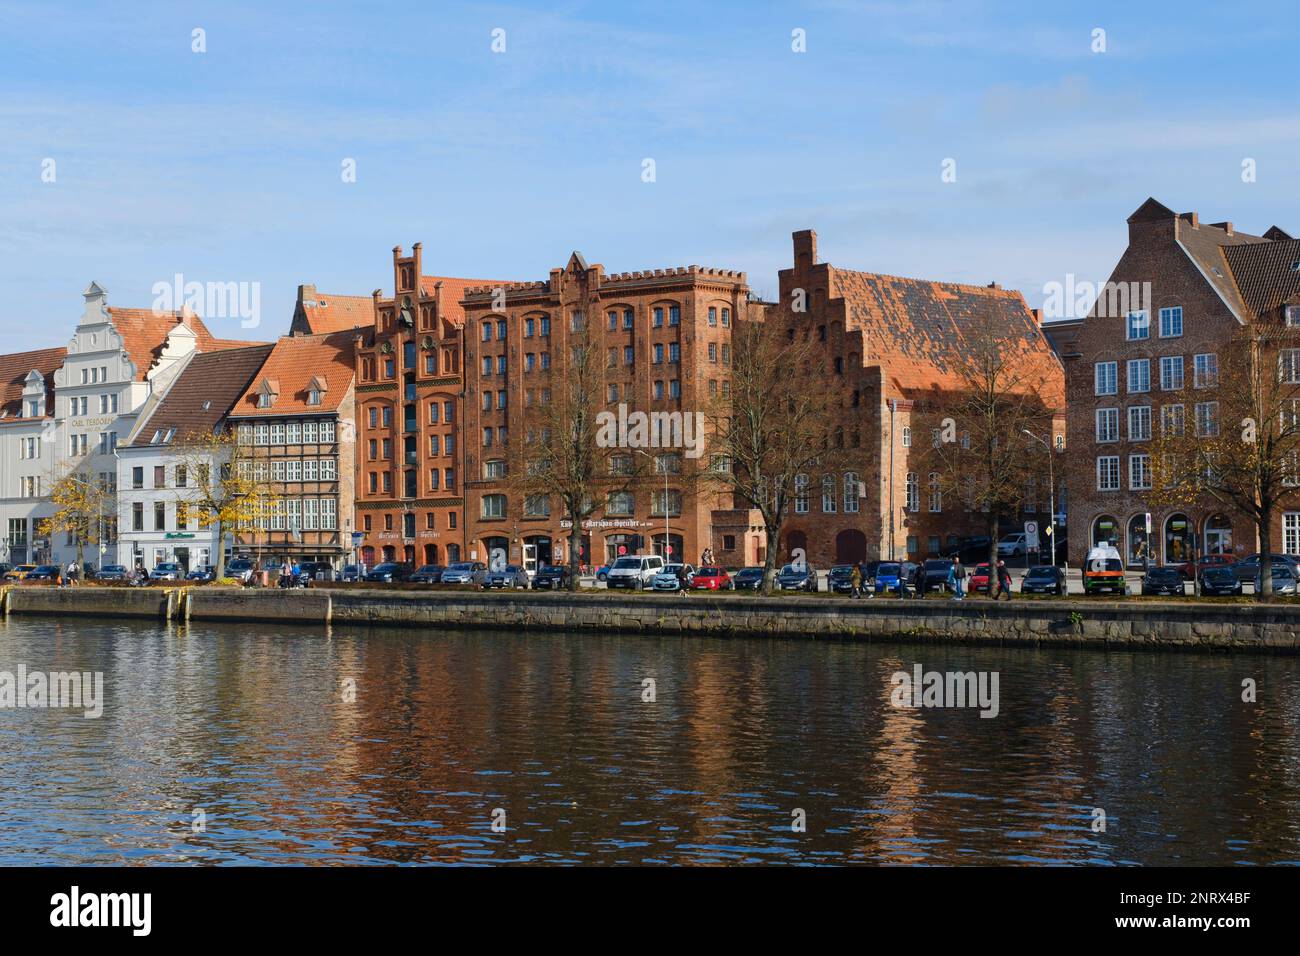 Edificio della città vecchia sul fiume trave, Lübeck, patrimonio dell'umanità dell'UNESCO, Schleswig-Holstein, Germania, Europa Foto Stock